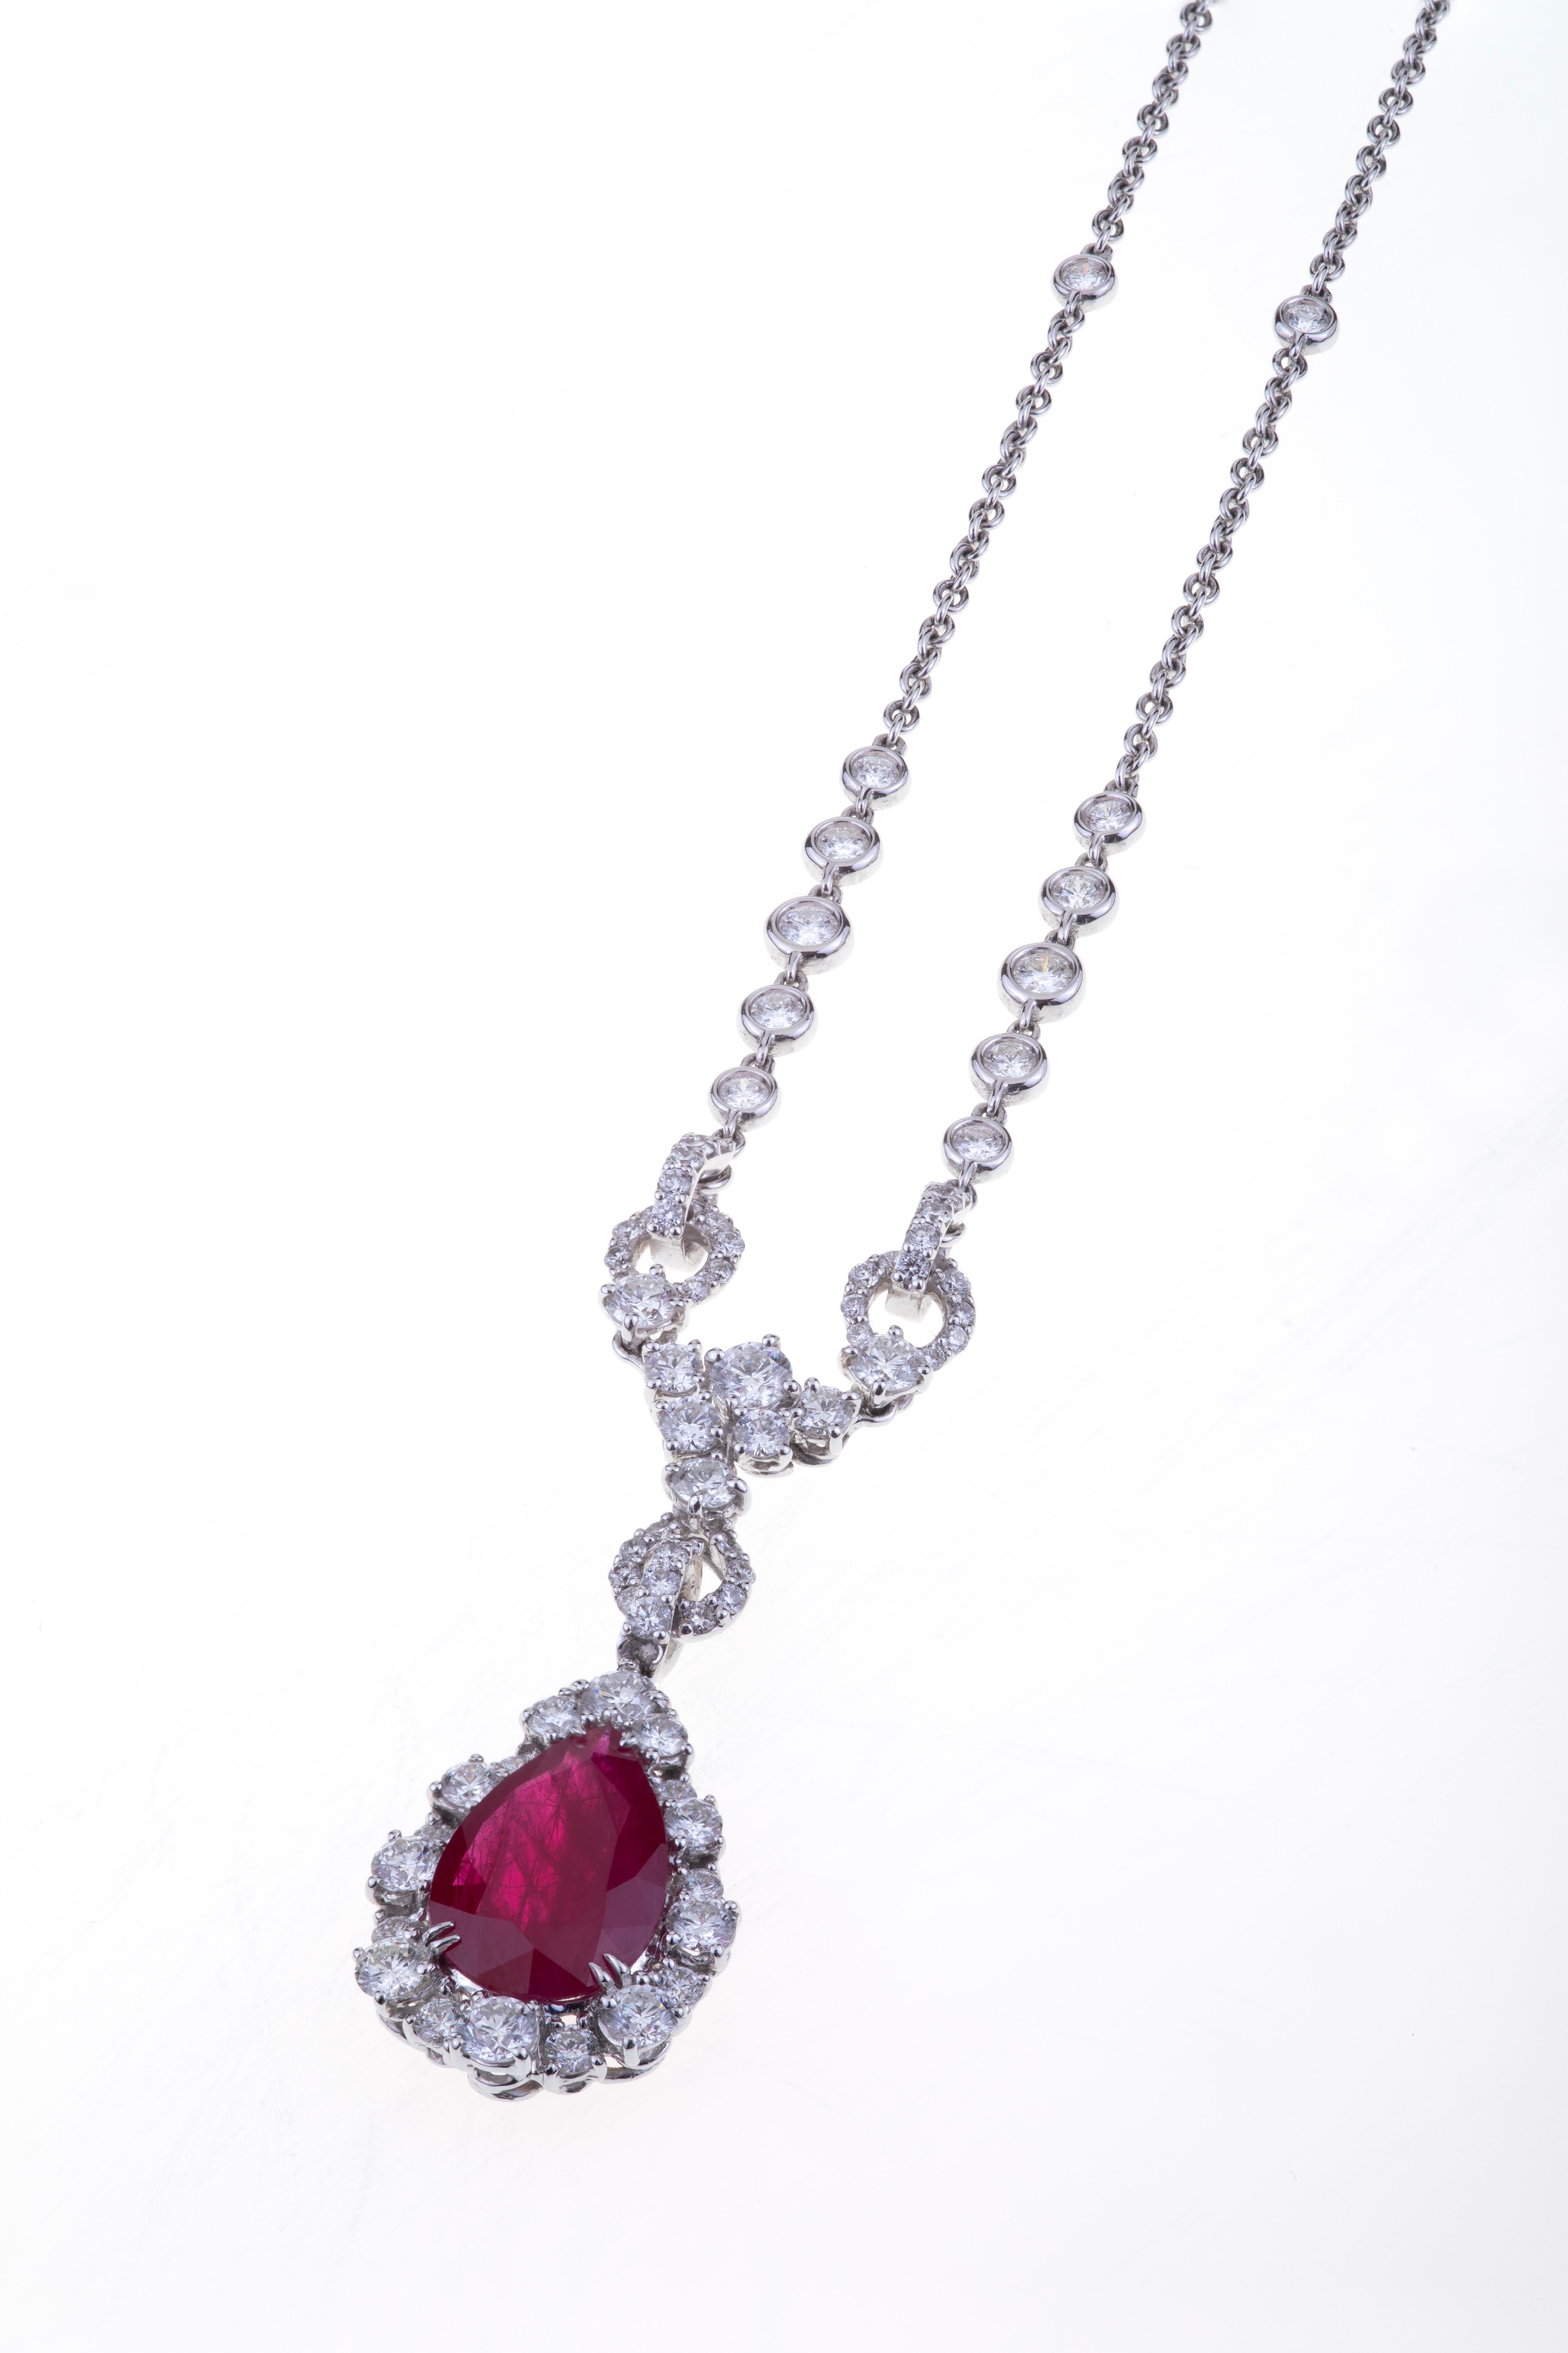 Pendentif Drop Cut Ruby ct. 3.57, Diamants sertis comme un sang royal.
Coupe, proportion et luminosité délicieuses pour le rubis ct. 3.57 Rouge vif en forme de poire transparente.
Les diamants autour du rubis et sur la chaîne sont de 2,89 ct. et